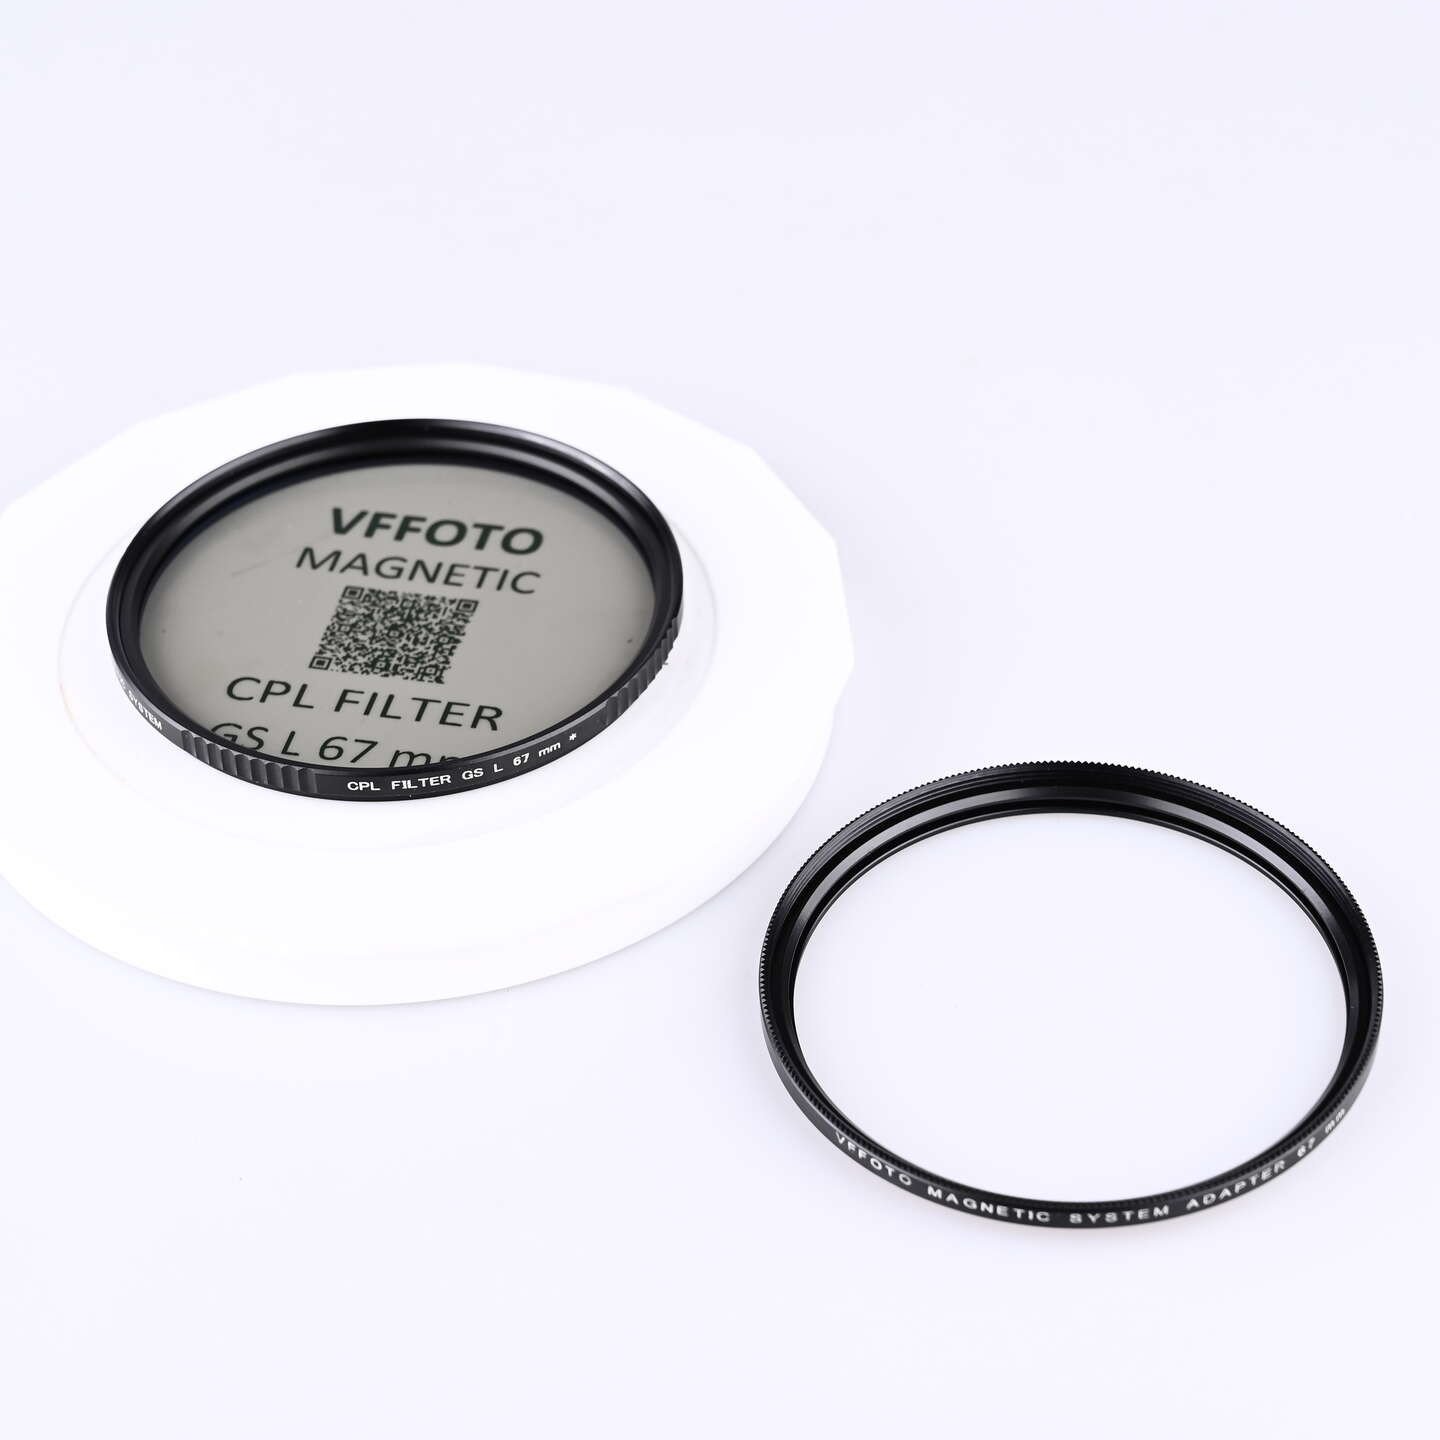 VFFOTO GS-L magnetický polarizační filtr 67 mm + adaptér bazar